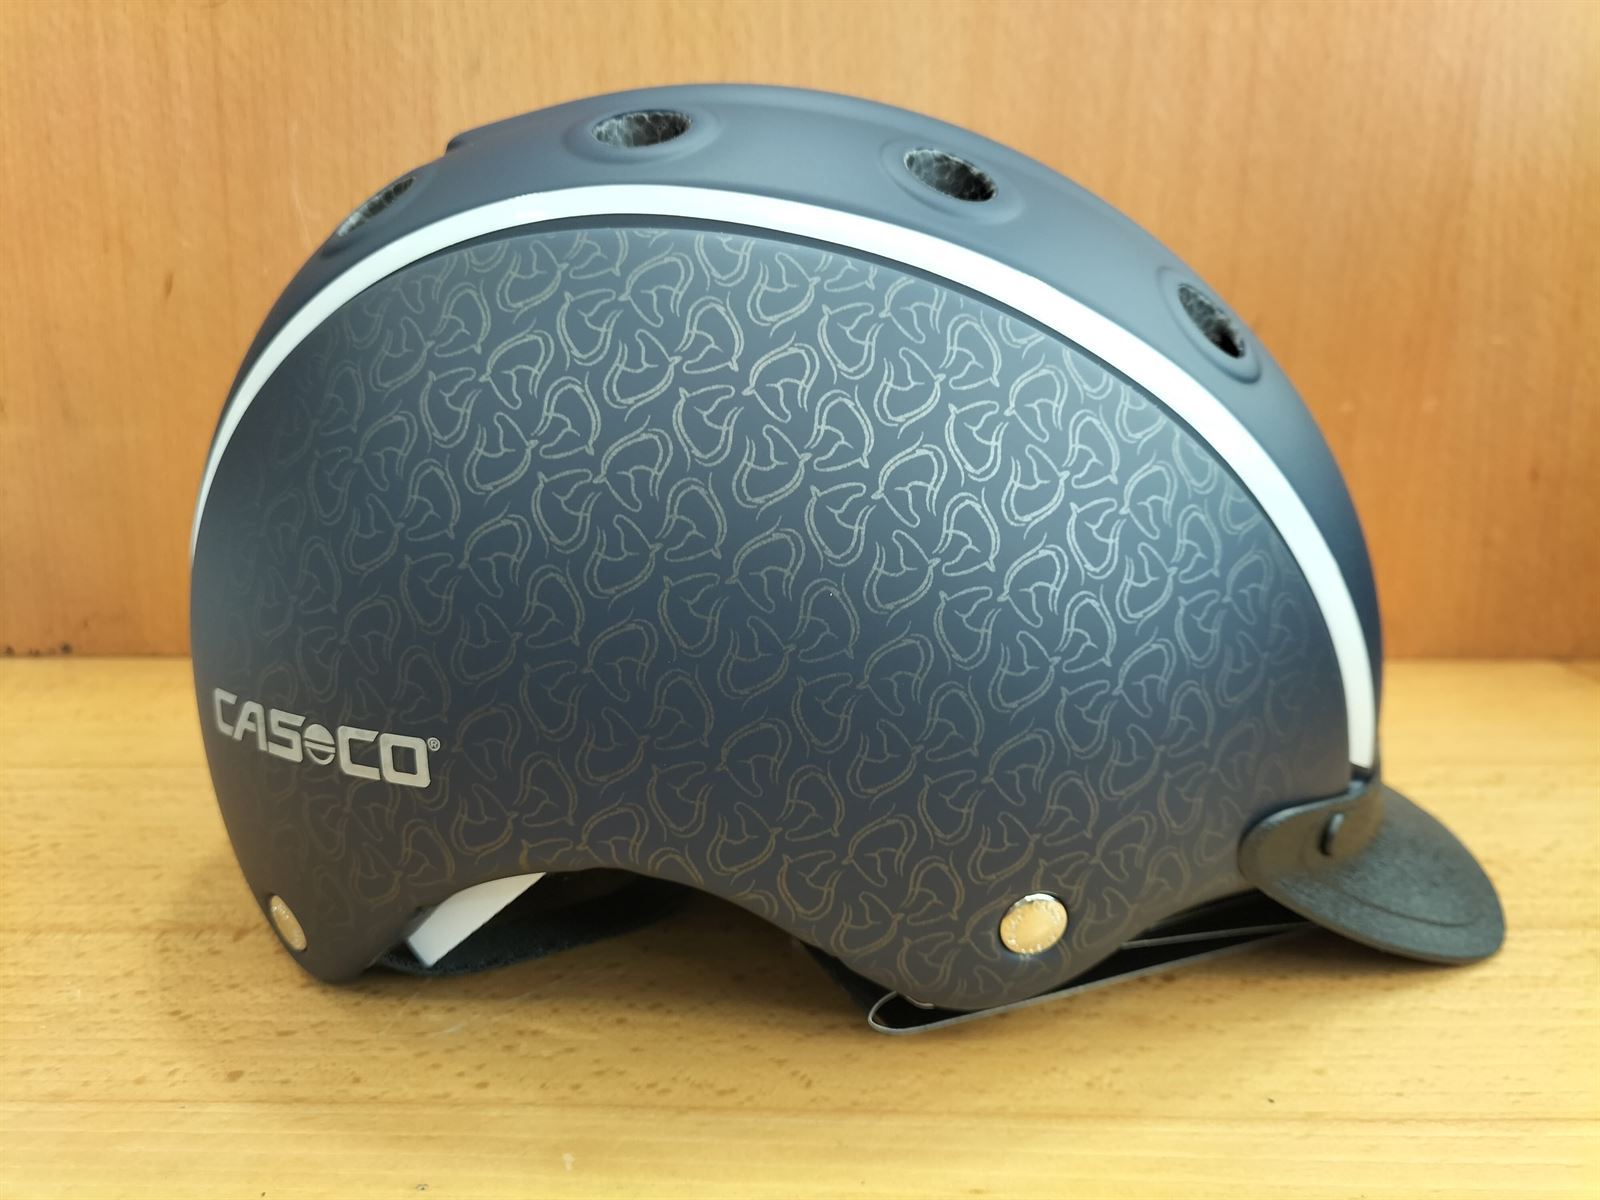 Casco CASCO Choice color azul marino, talla S (52-56) - Imagen 2